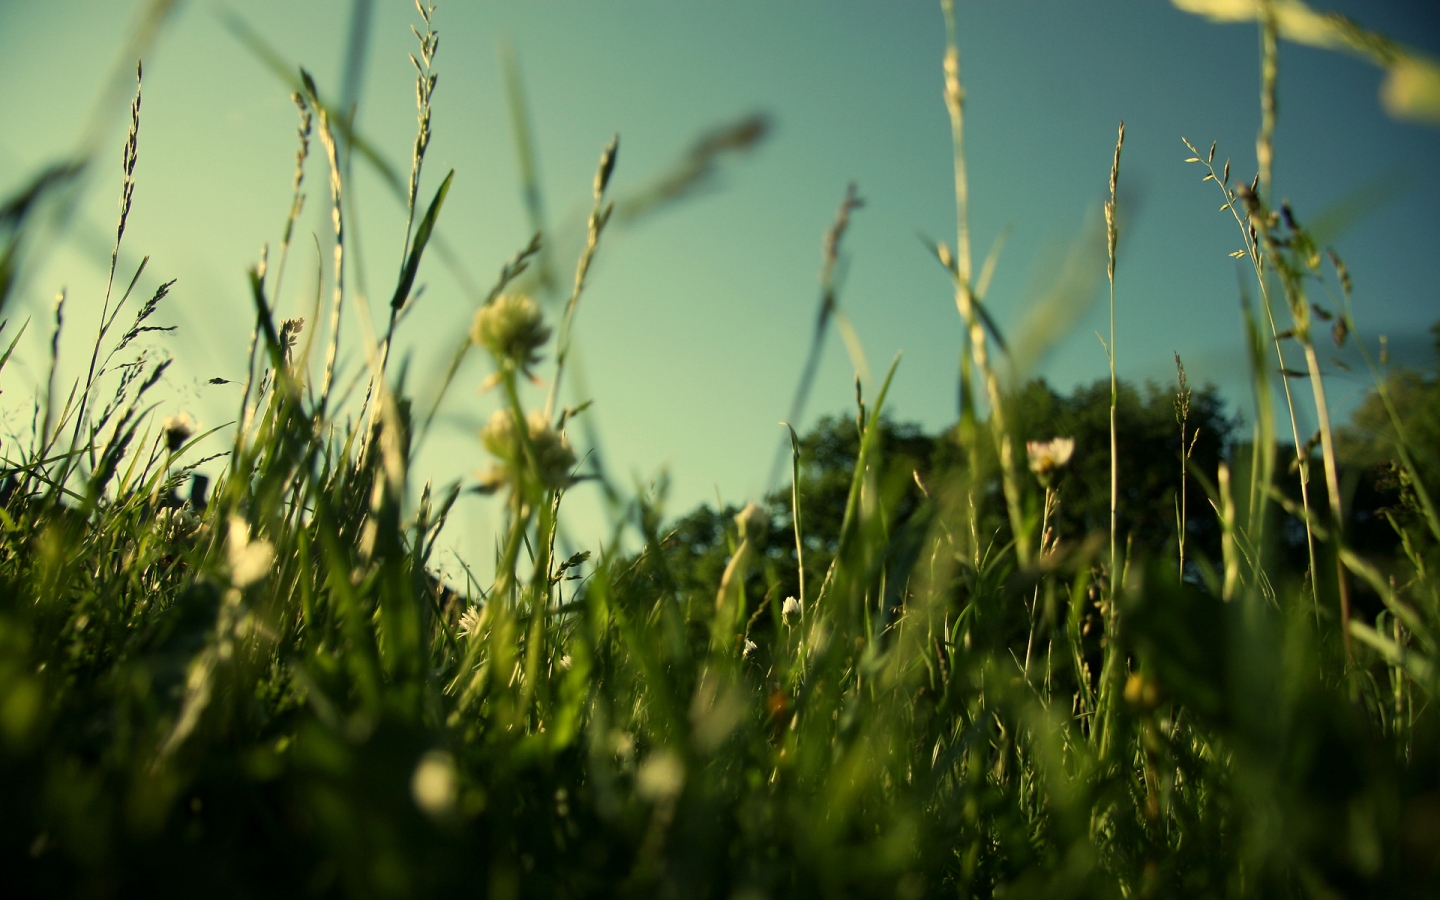 Evening Grass for 1440 x 900 widescreen resolution